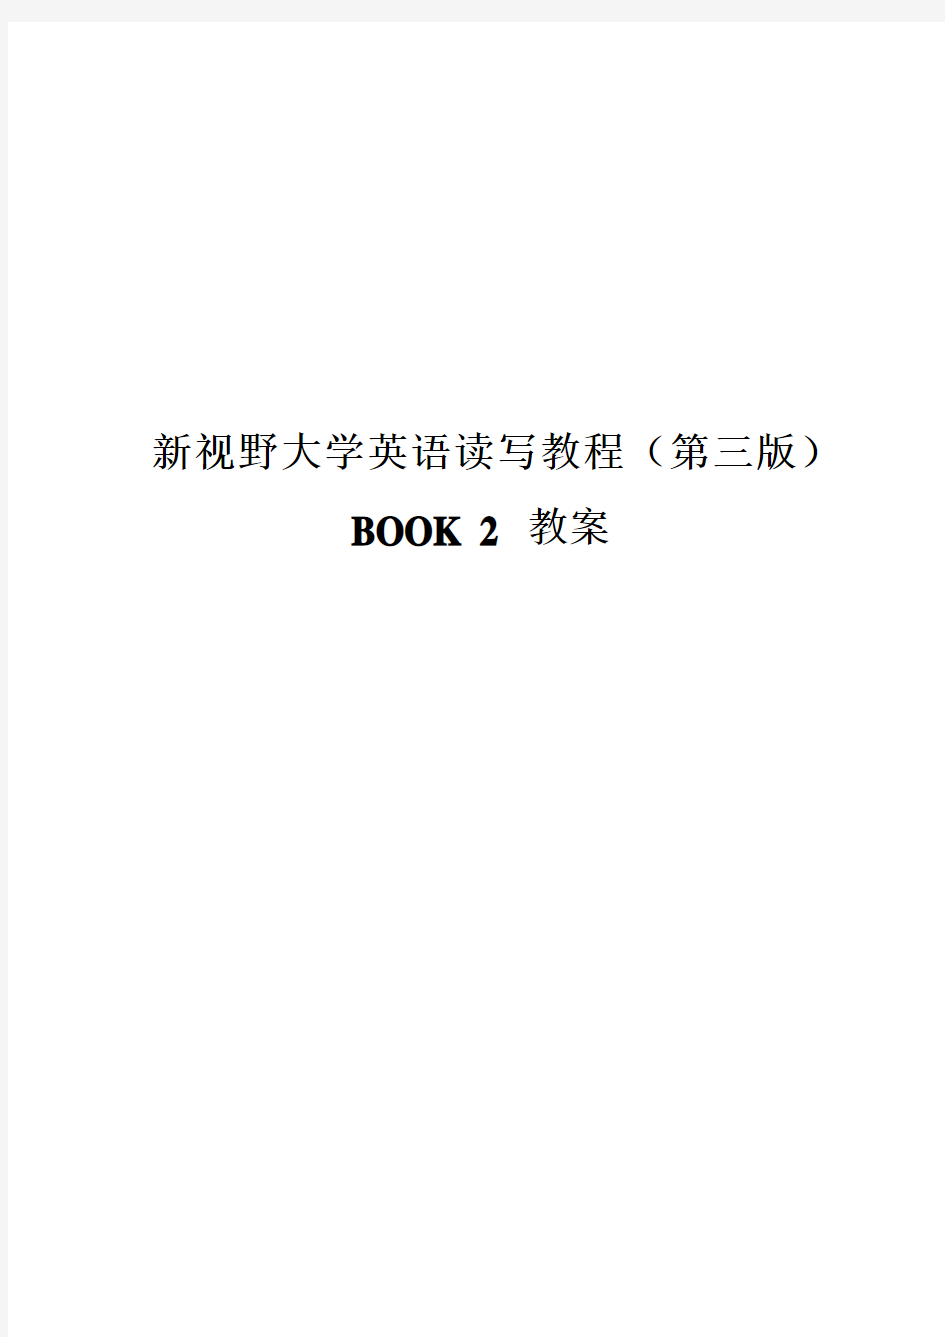 新视野大学英语第三版读写教程BOOK2教案(最新版)